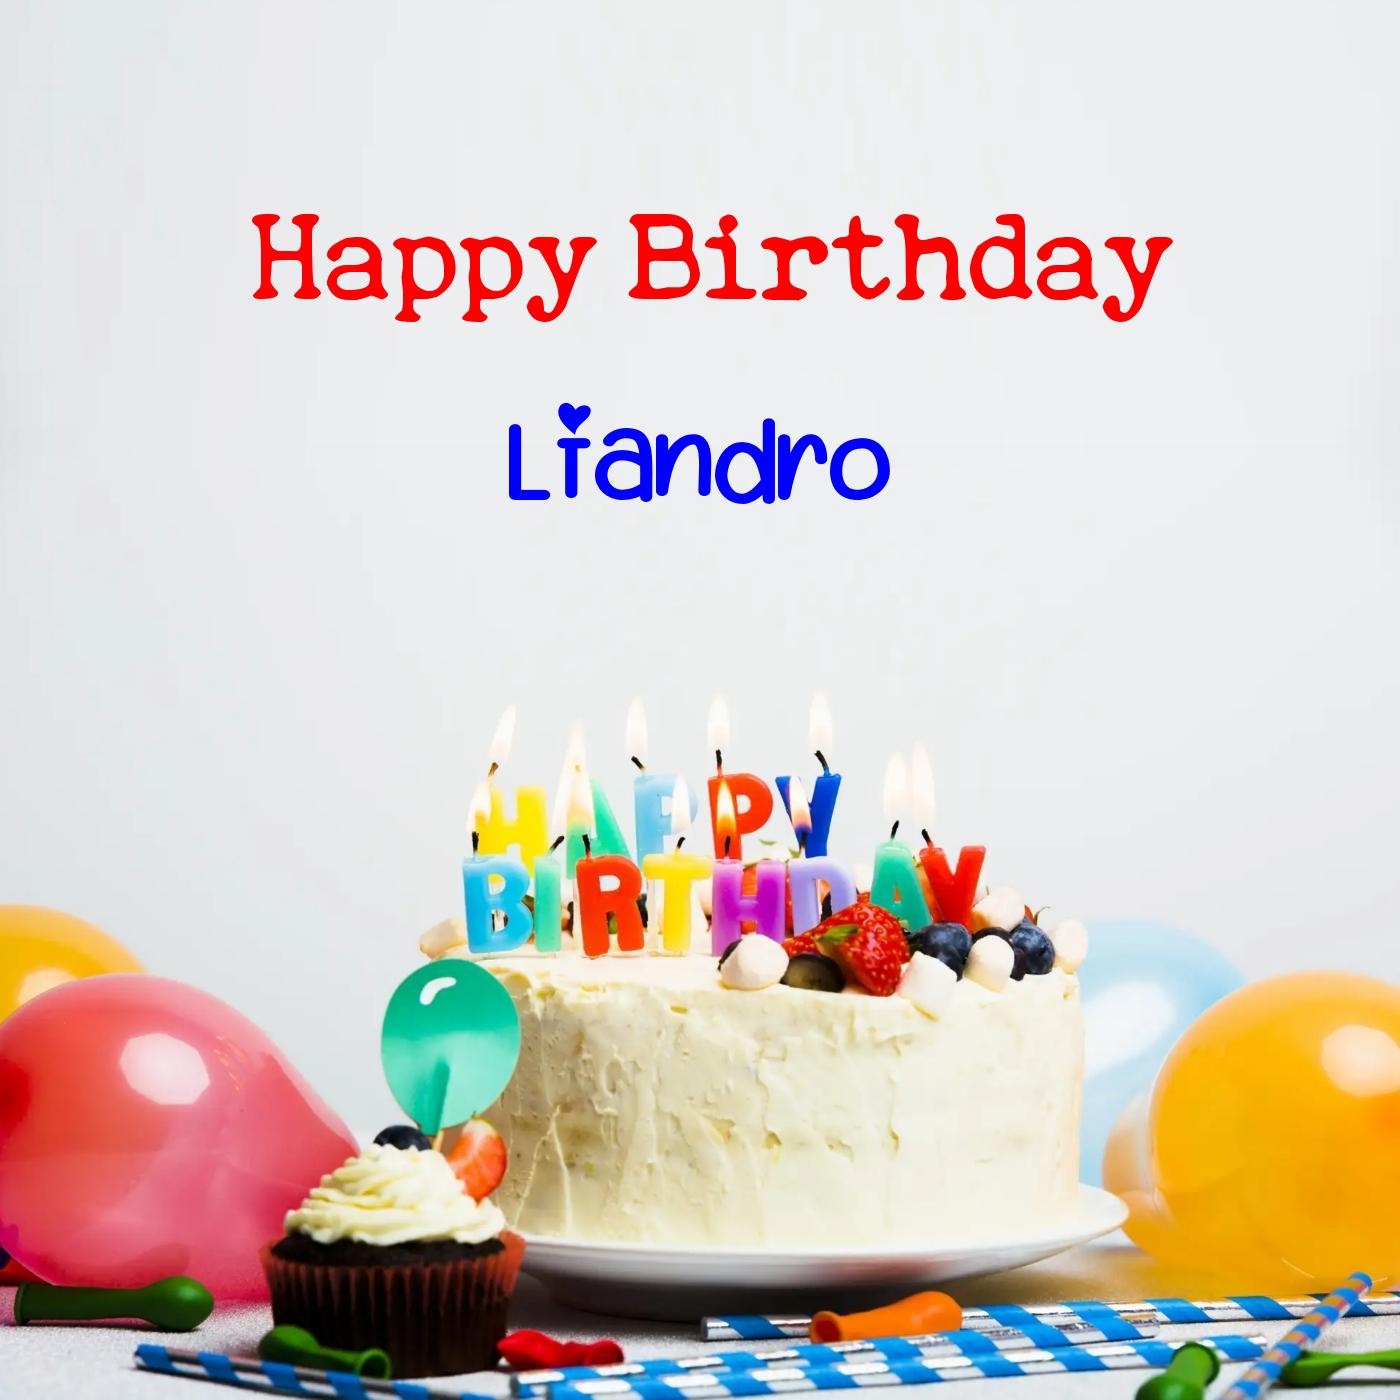 Happy Birthday Liandro Cake Balloons Card